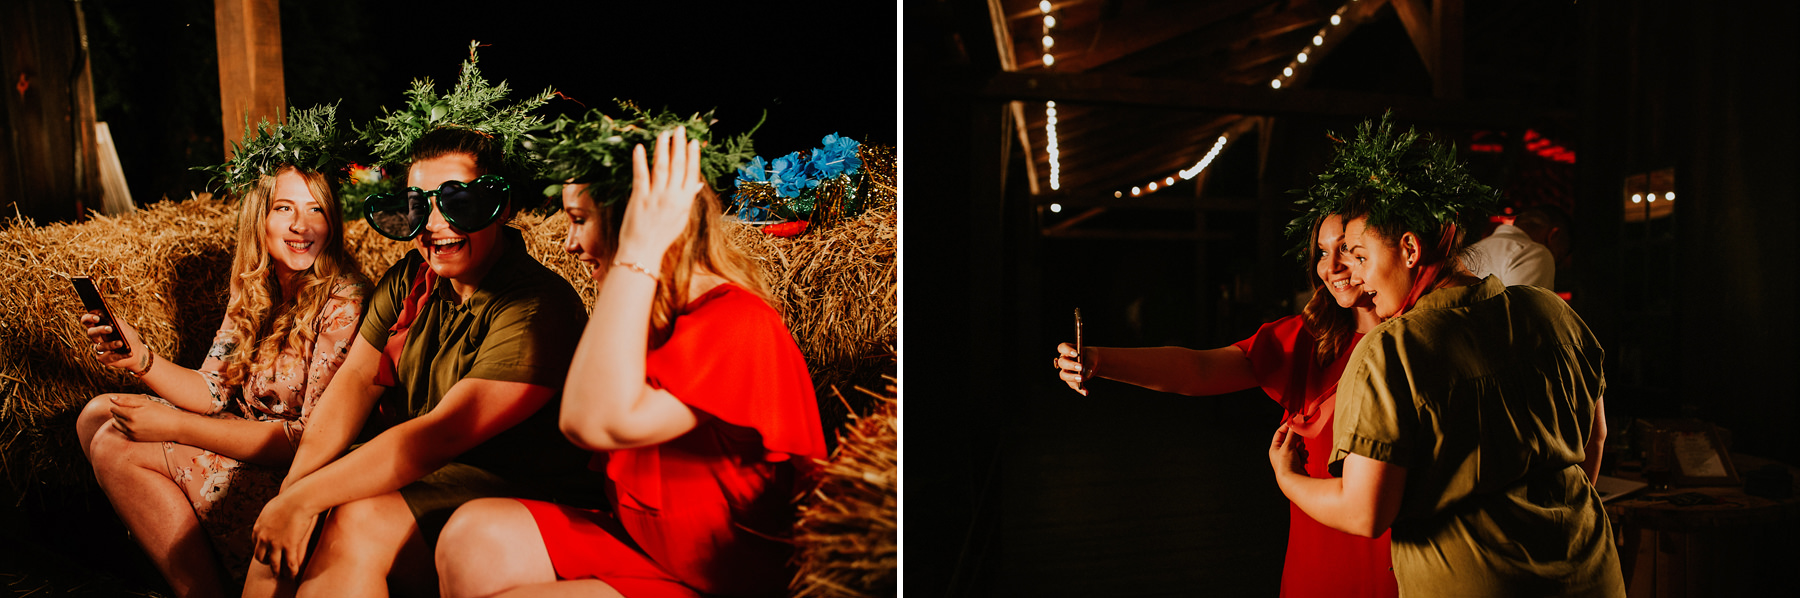 295 folwark wiazy wesele w stodole krakow slub plenerowy fotograf slubny karol nycz photography